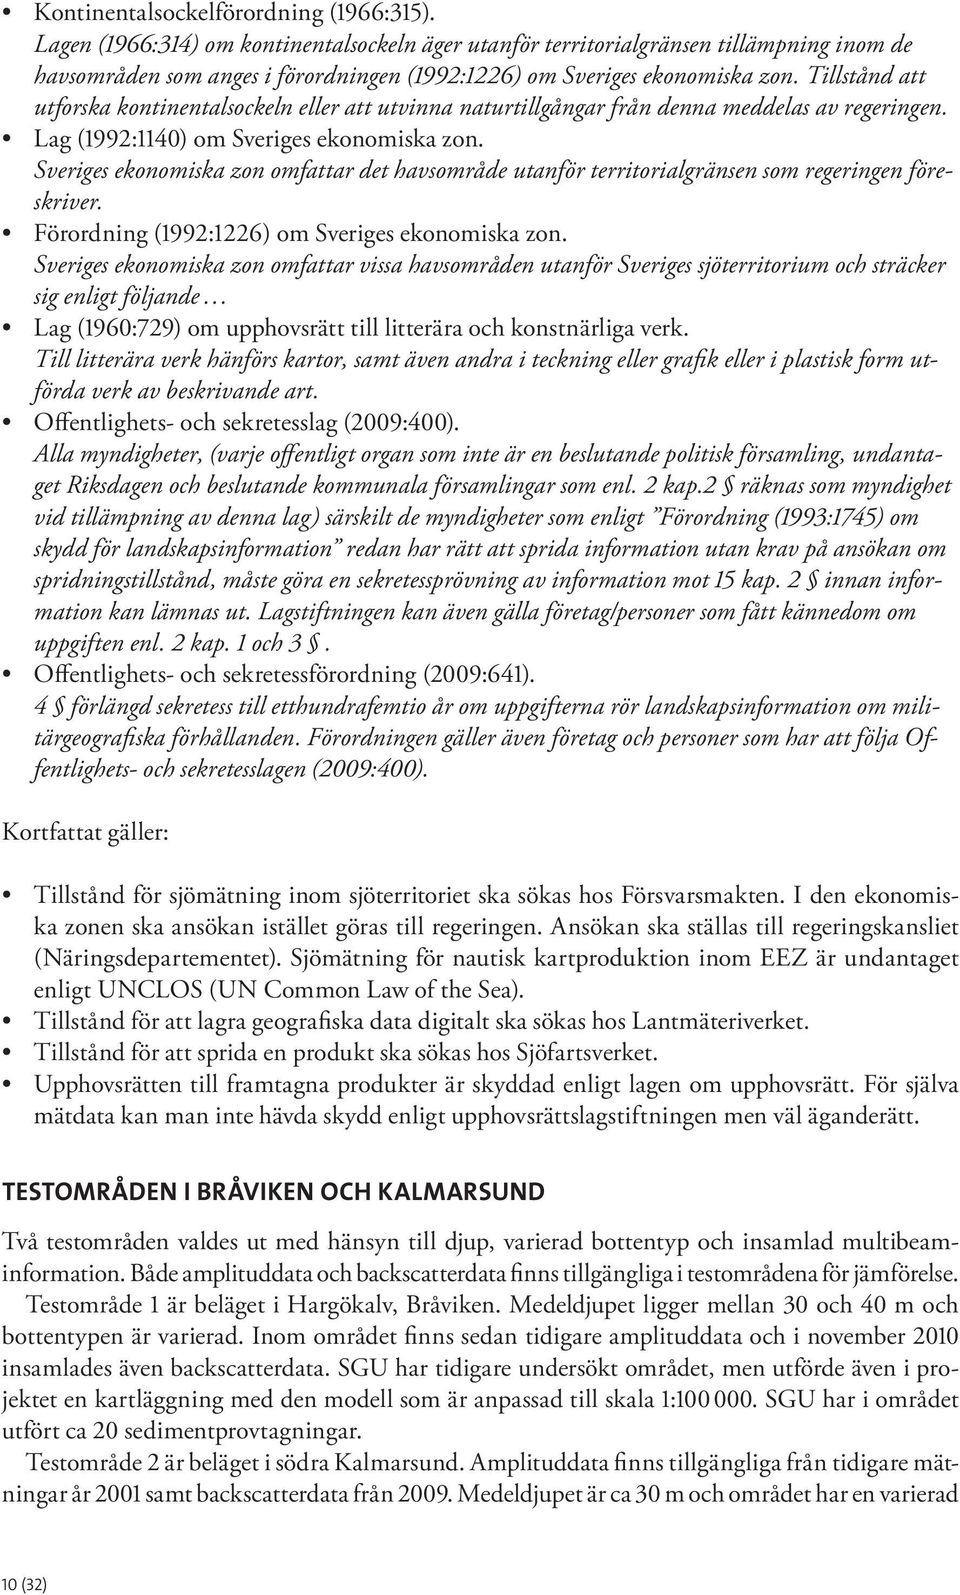 Tillstånd att utforska kontinentalsockeln eller att utvinna naturtillgångar från denna meddelas av regeringen. Lag (1992:1140) om Sveriges ekonomiska zon.